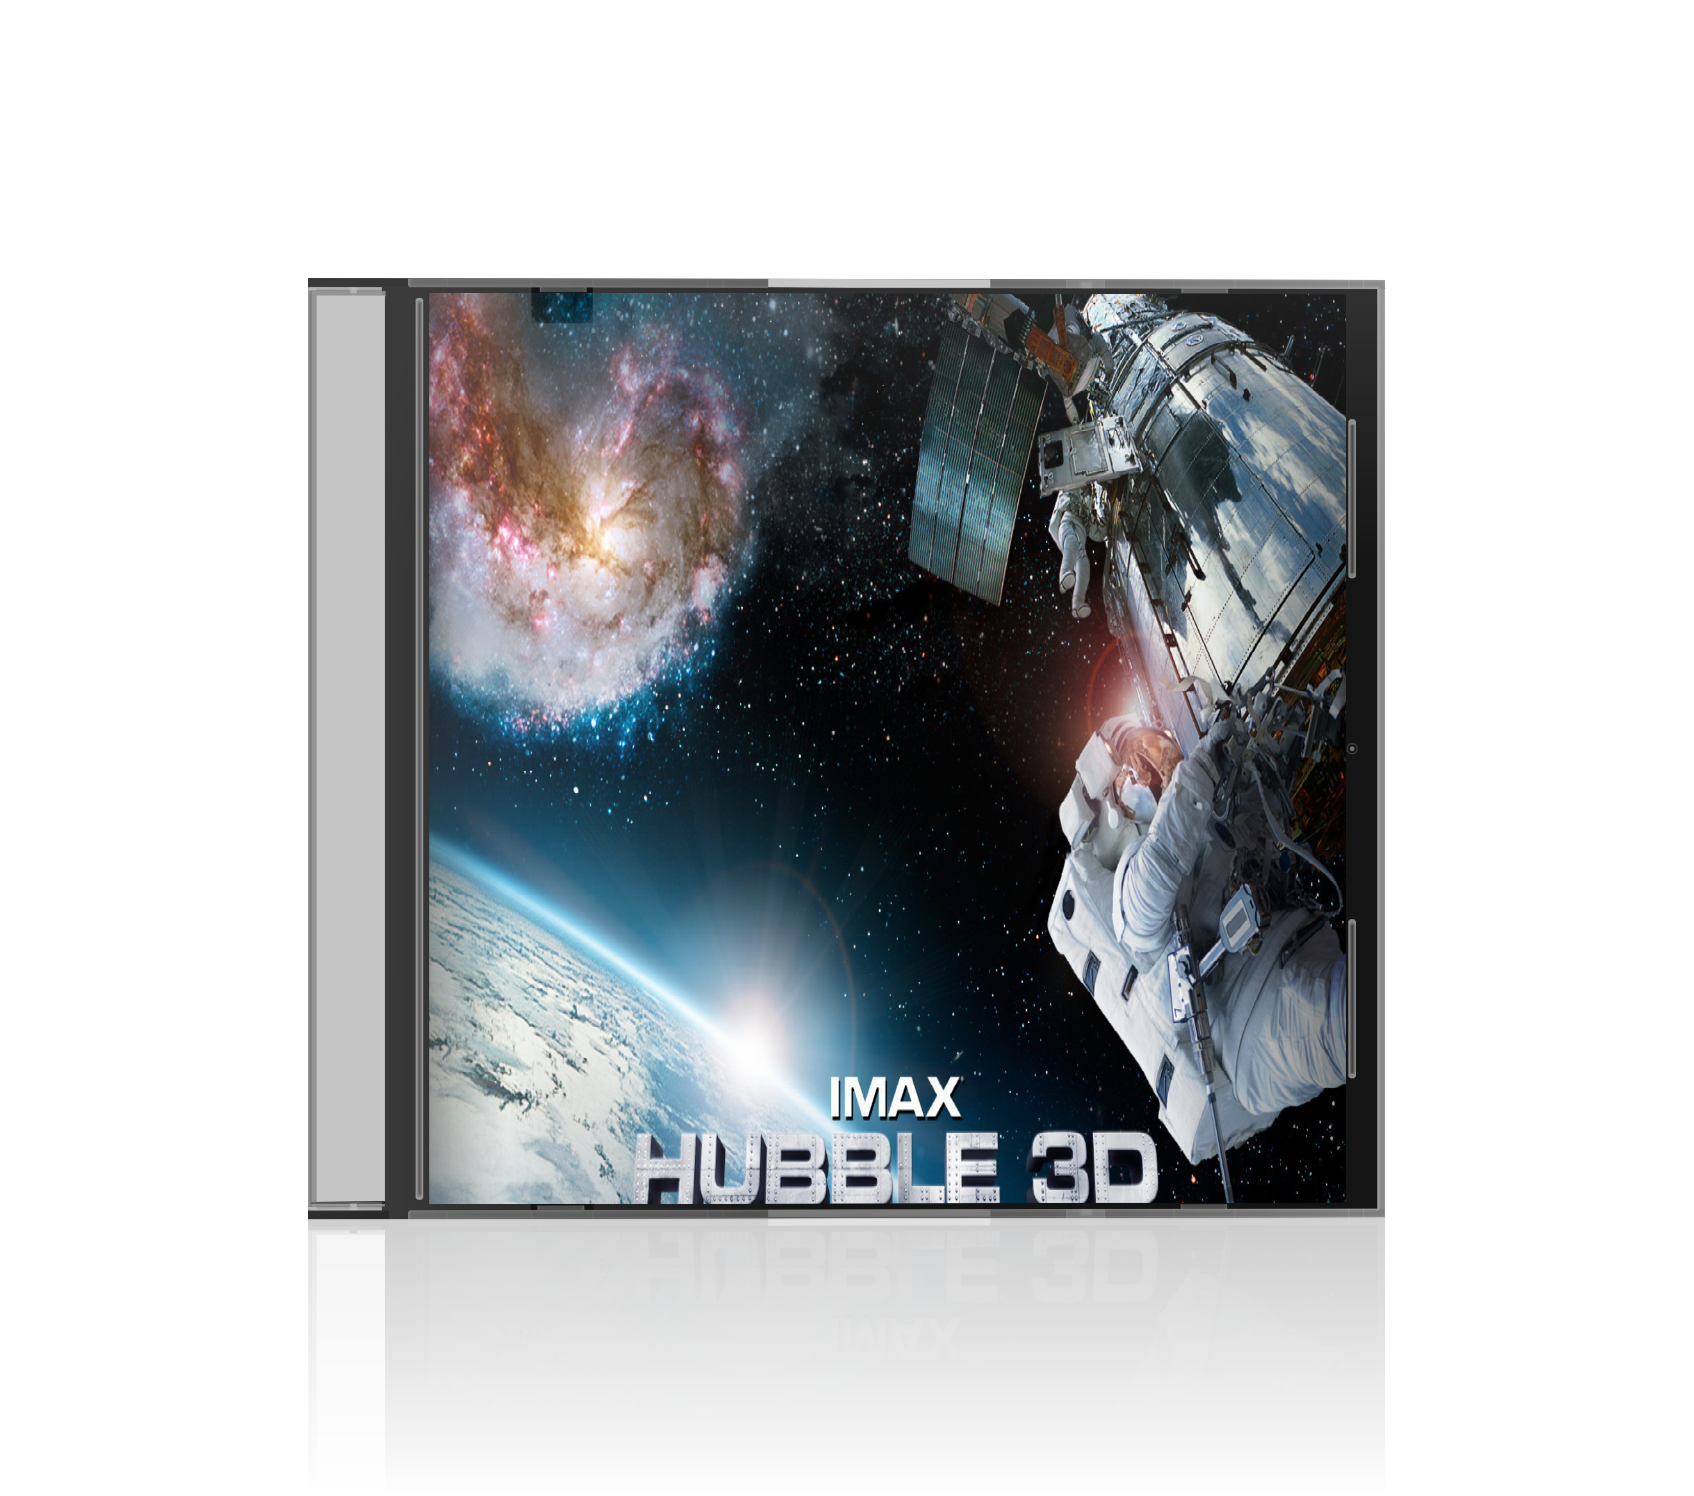 Тайны Вселенной. Телескоп Хаббл в 3D / Hubble 3D (2010) смотреть онлайн смотреть онлайн